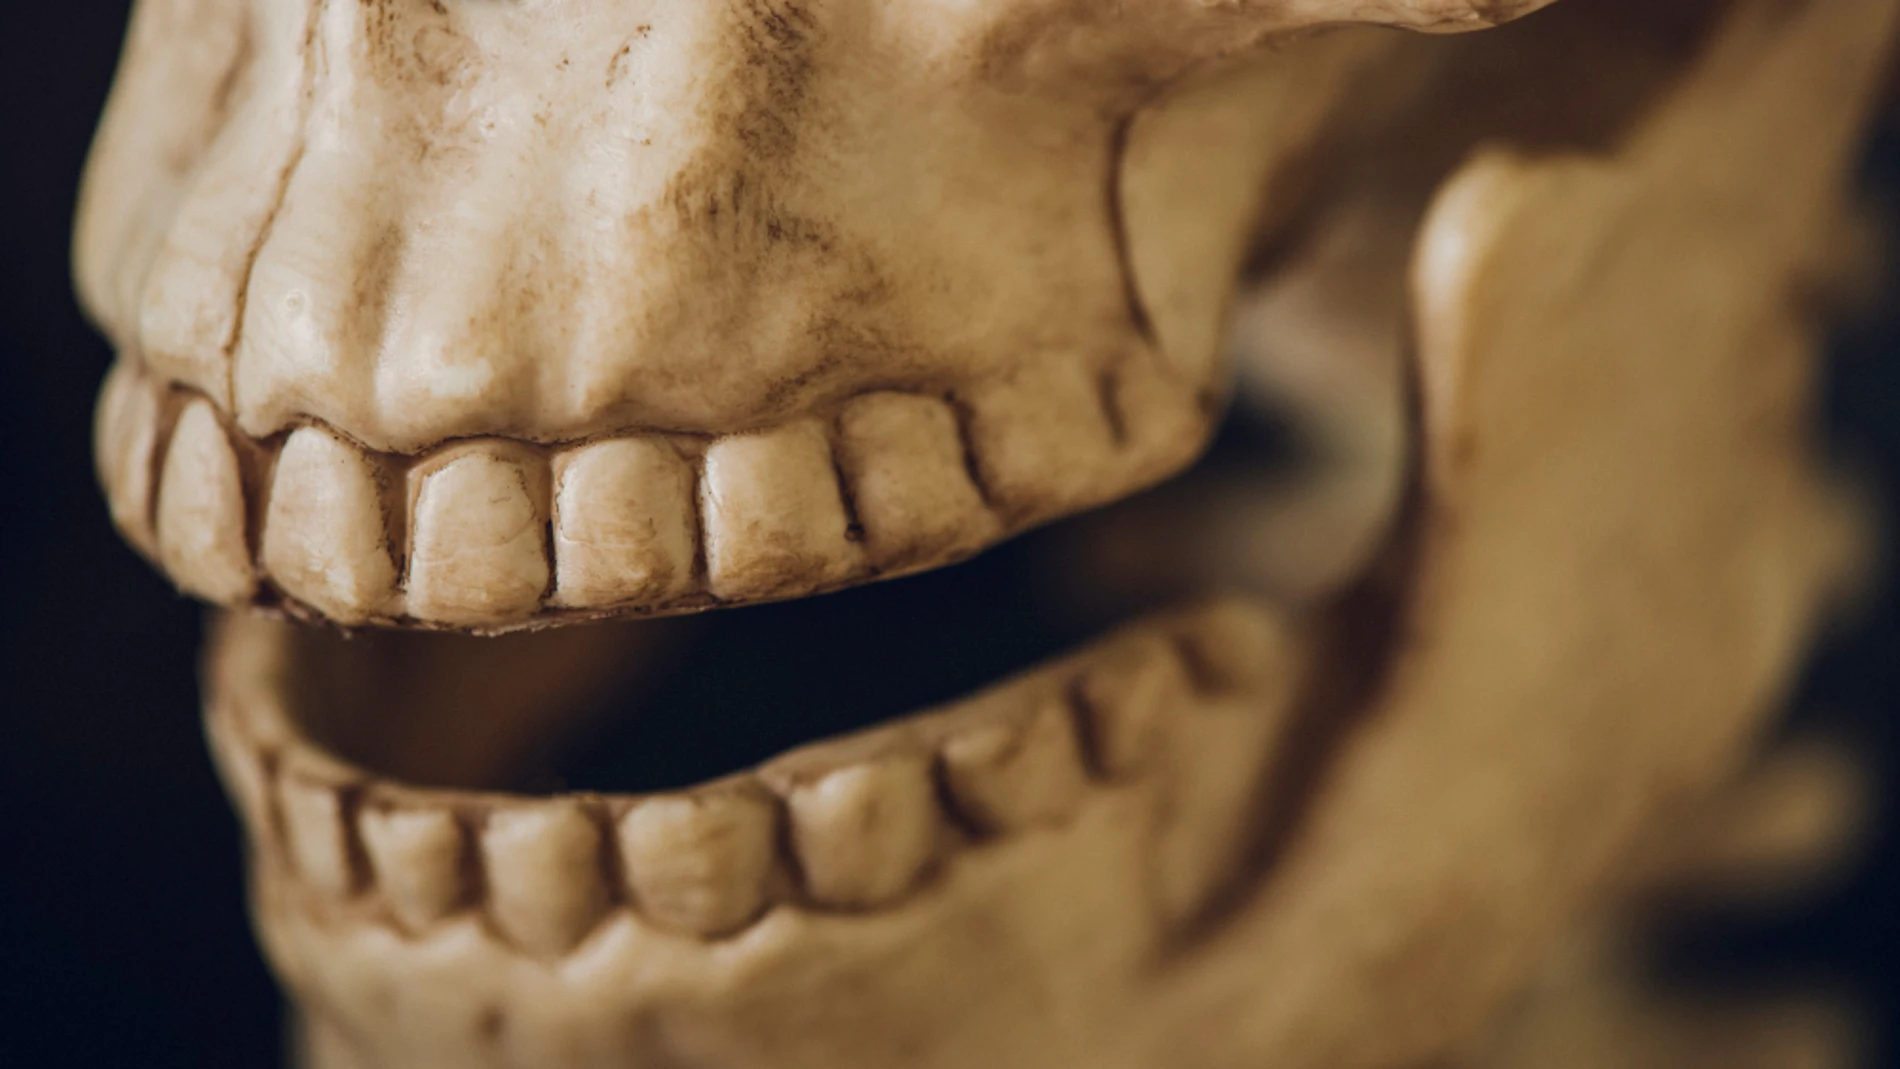 Científicos españoles descubren el gen que dio forma al cráneo humano